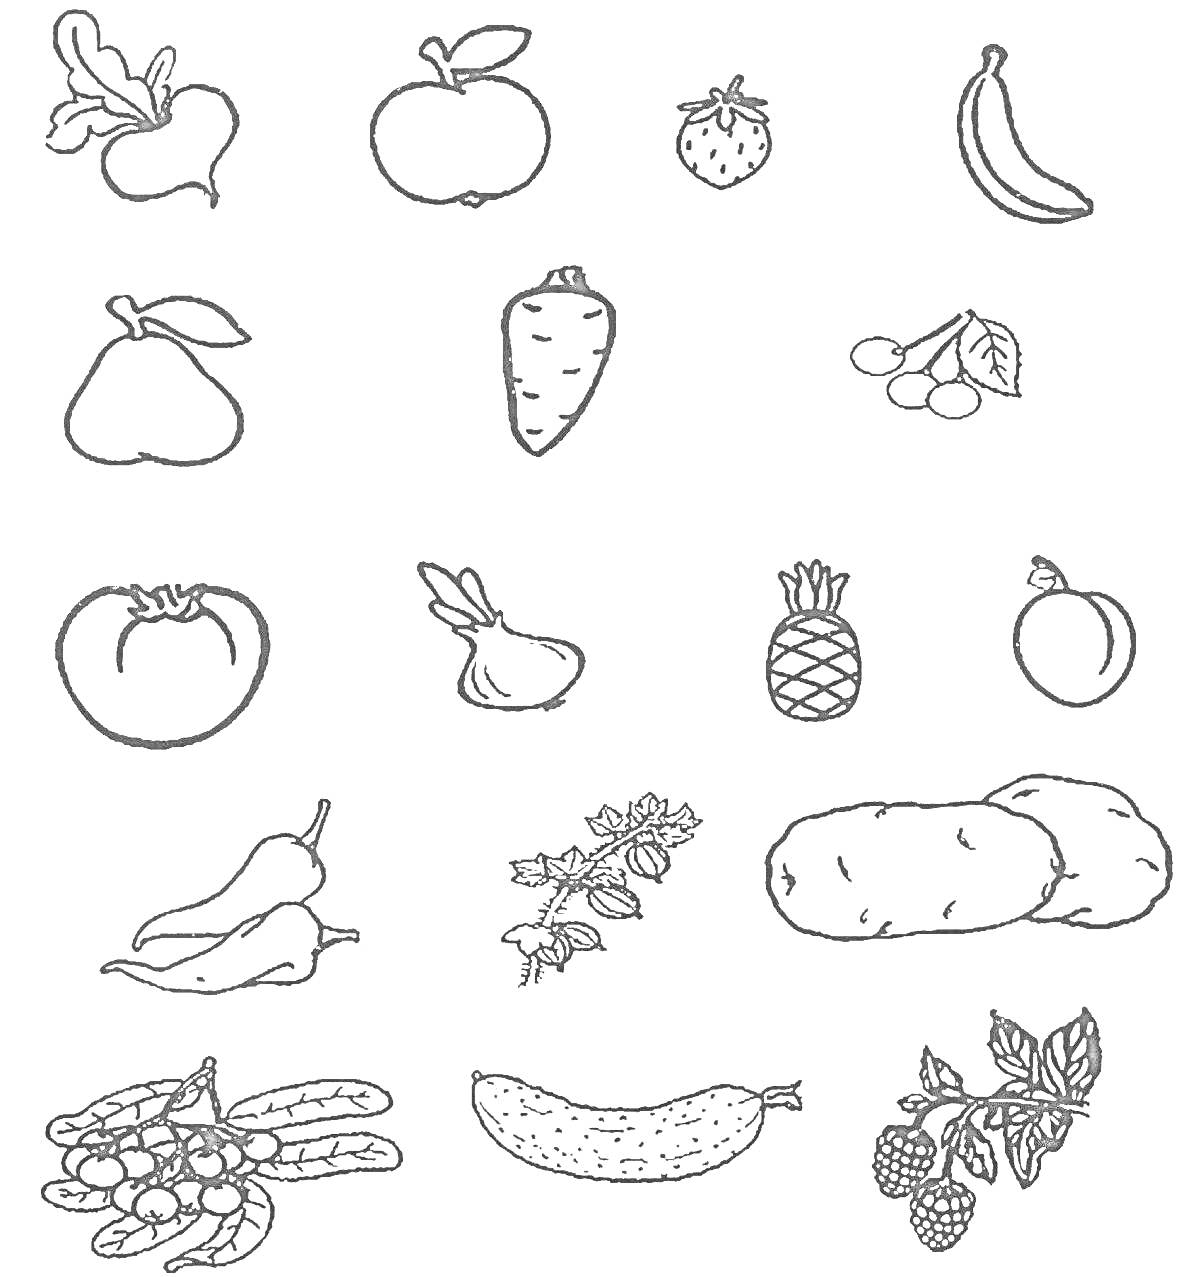 Раскраска Растительная жизнь: яблоко, клубника, банан, груша, морковь, виноград, томат, лук, ананас, апельсин, перец, картофель, вишня, овощные растения, огурец, малина.